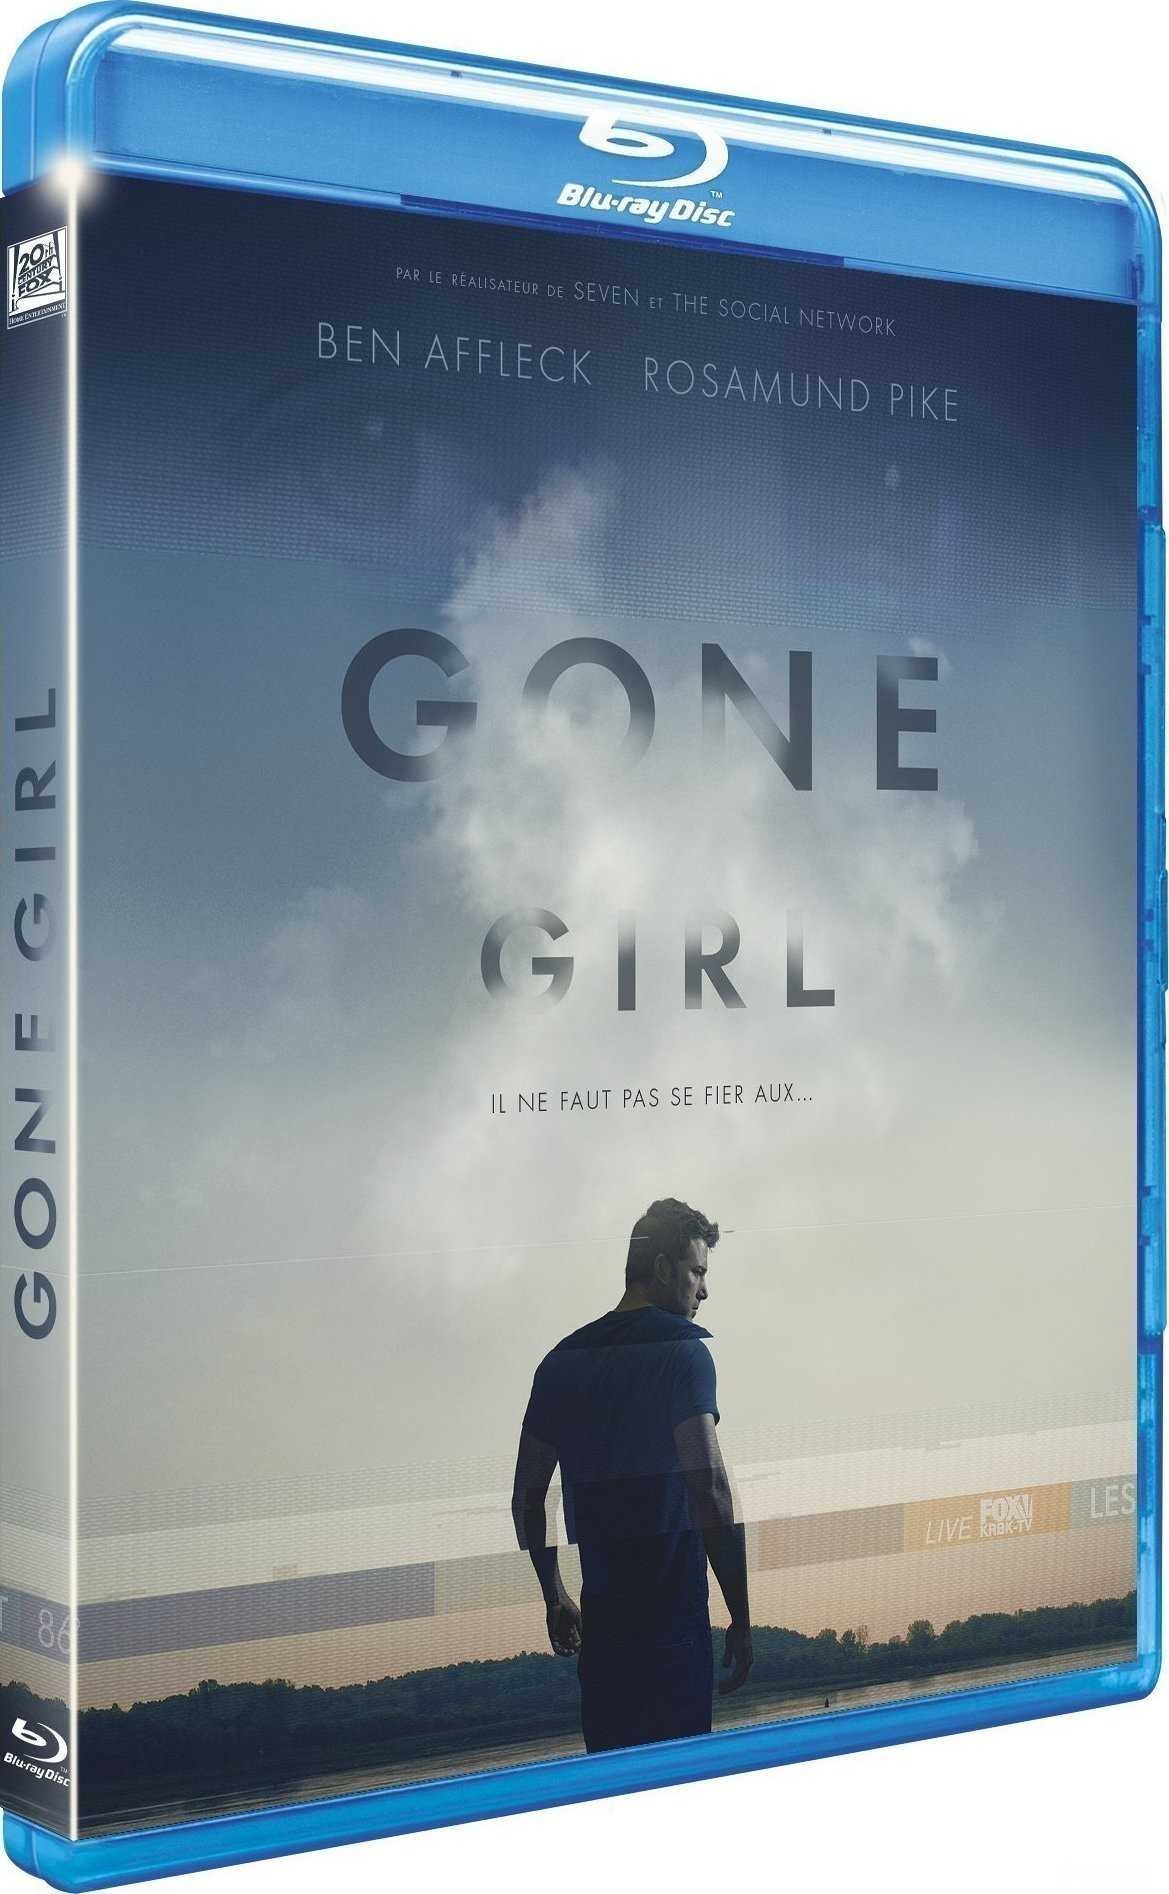 消失的爱人/失踪罪/控制 Gone.Girl.2014.1080p.BluRay.REMUX.AVC.DTS-HD.MA.7.1-RARBG 39GB-1.jpg